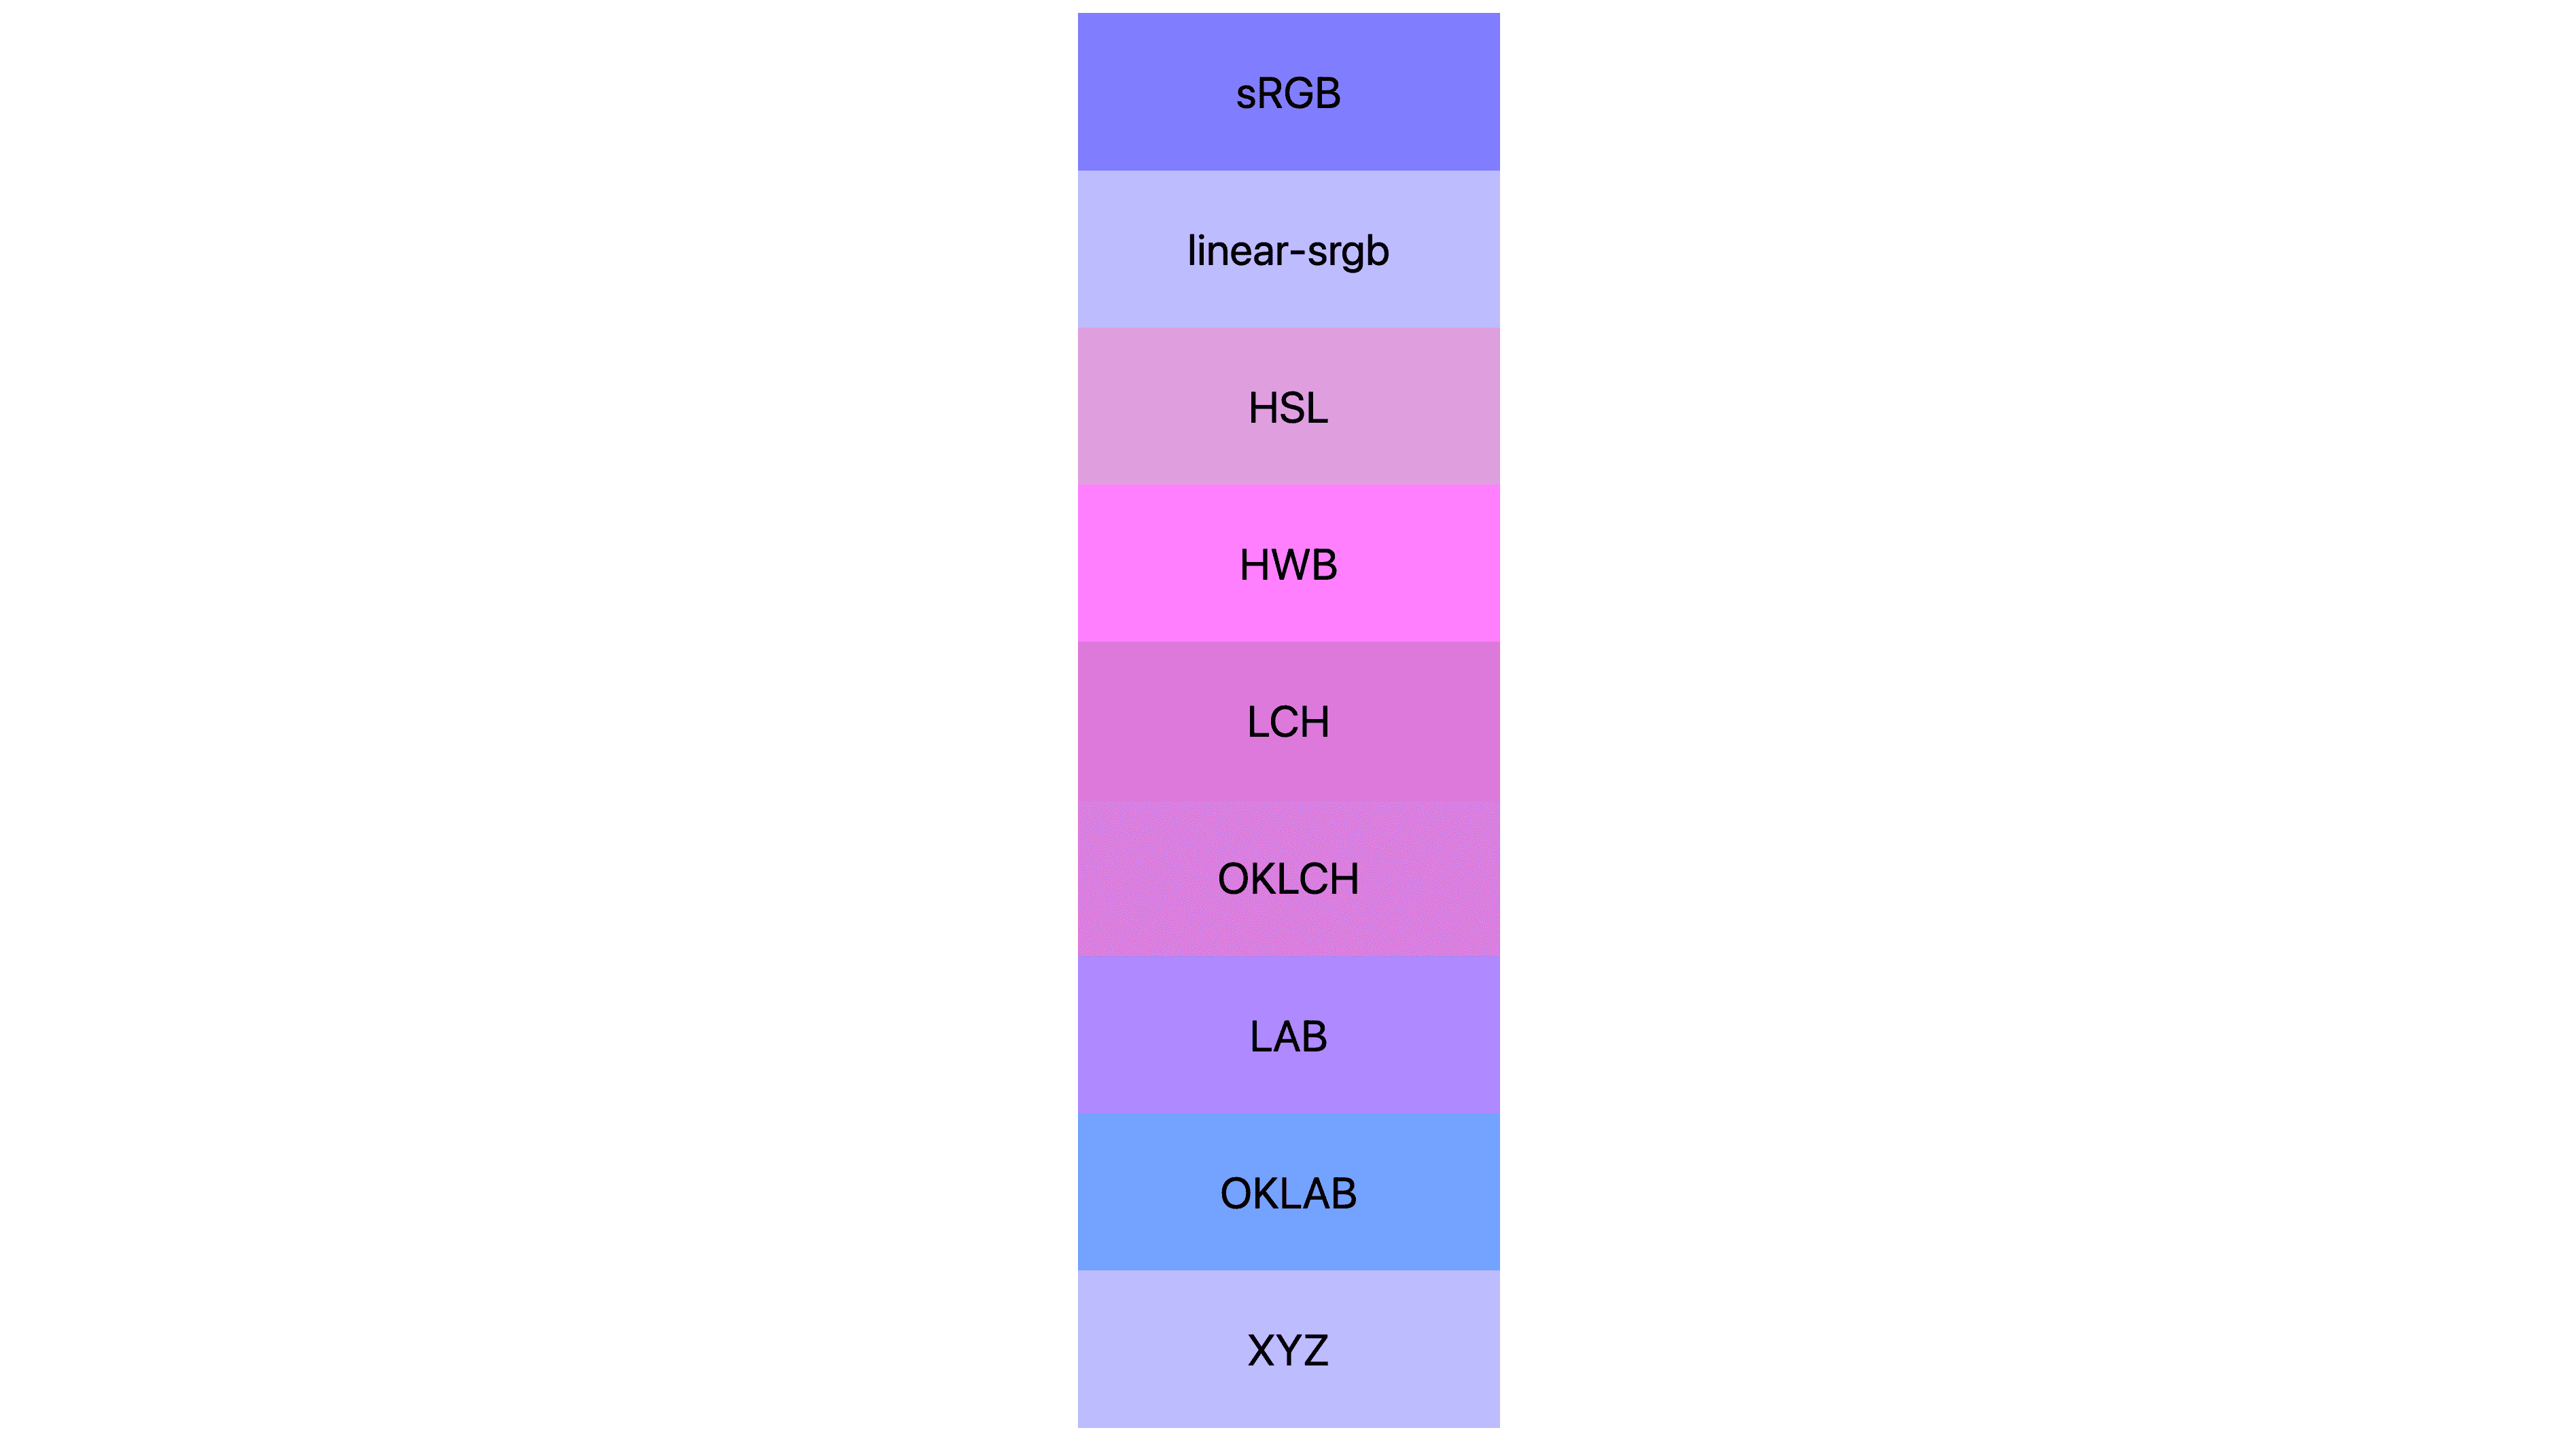 7 kleurruimten (srgb, lineair-srgb, lch, oklch, lab, oklab, xyz) elk weergegeven met verschillende resultaten. Velen zijn roze of paars, weinigen zijn eigenlijk nog blauw.